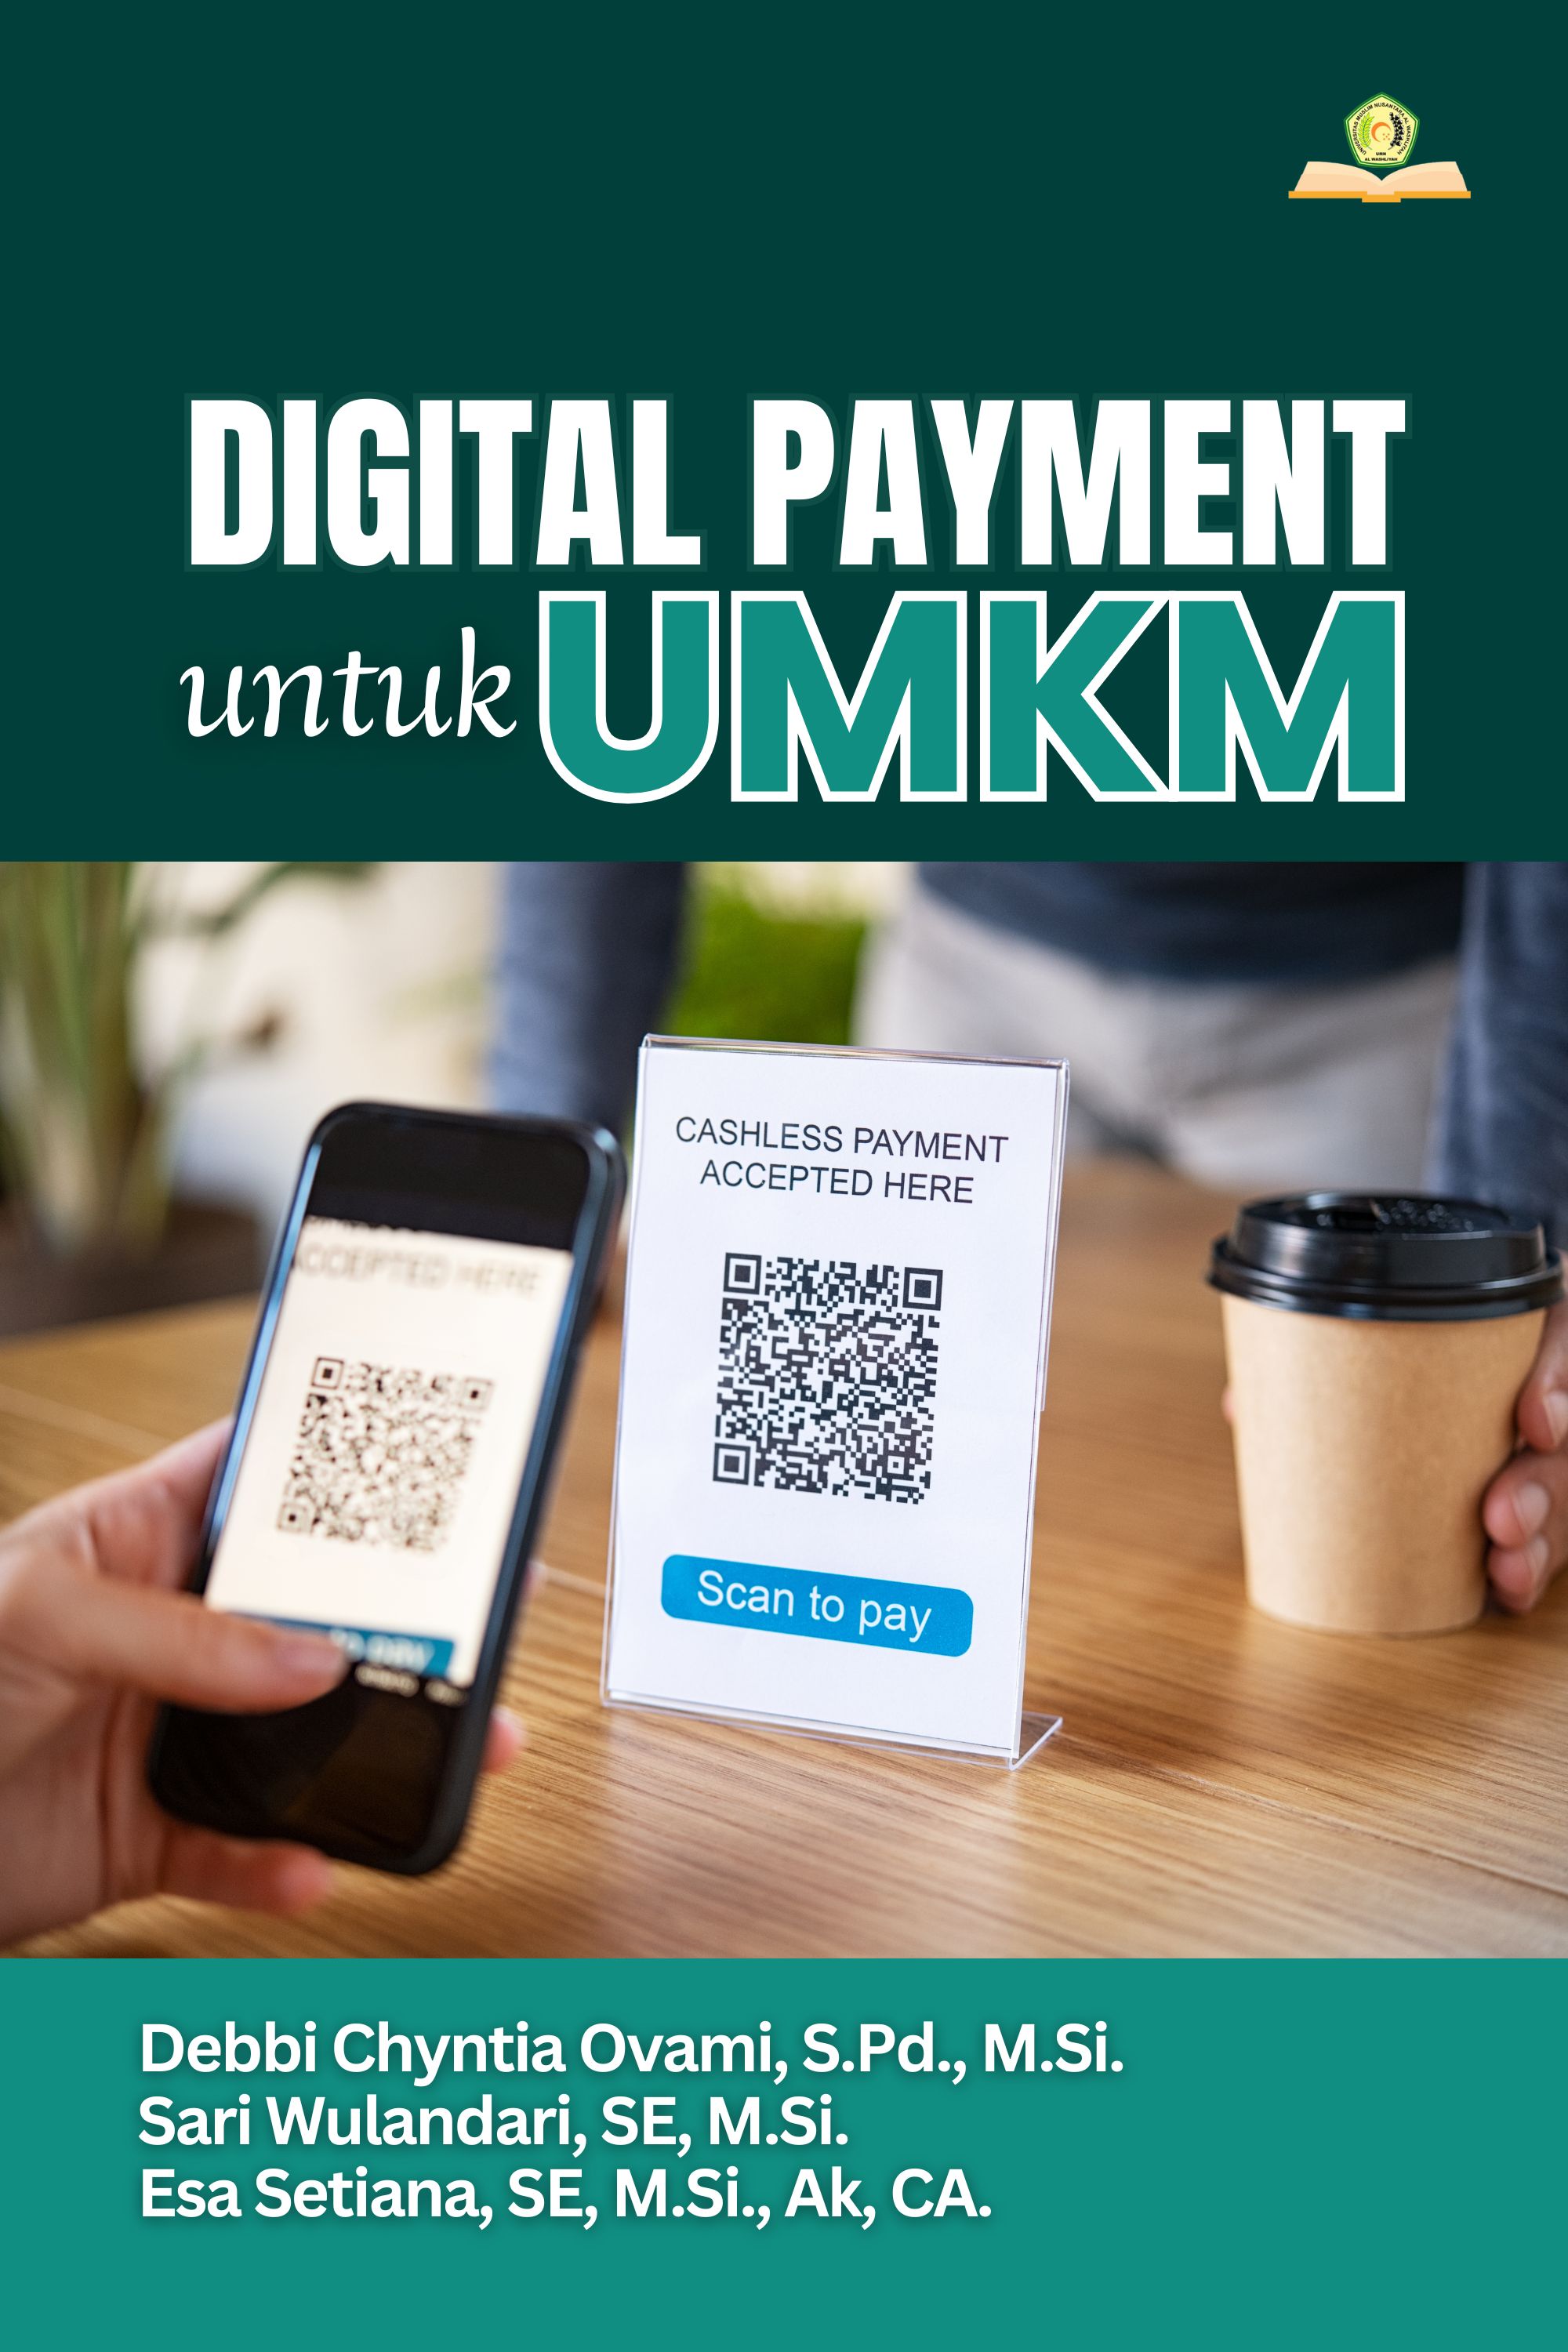 Digital Payment Untuk UMKM